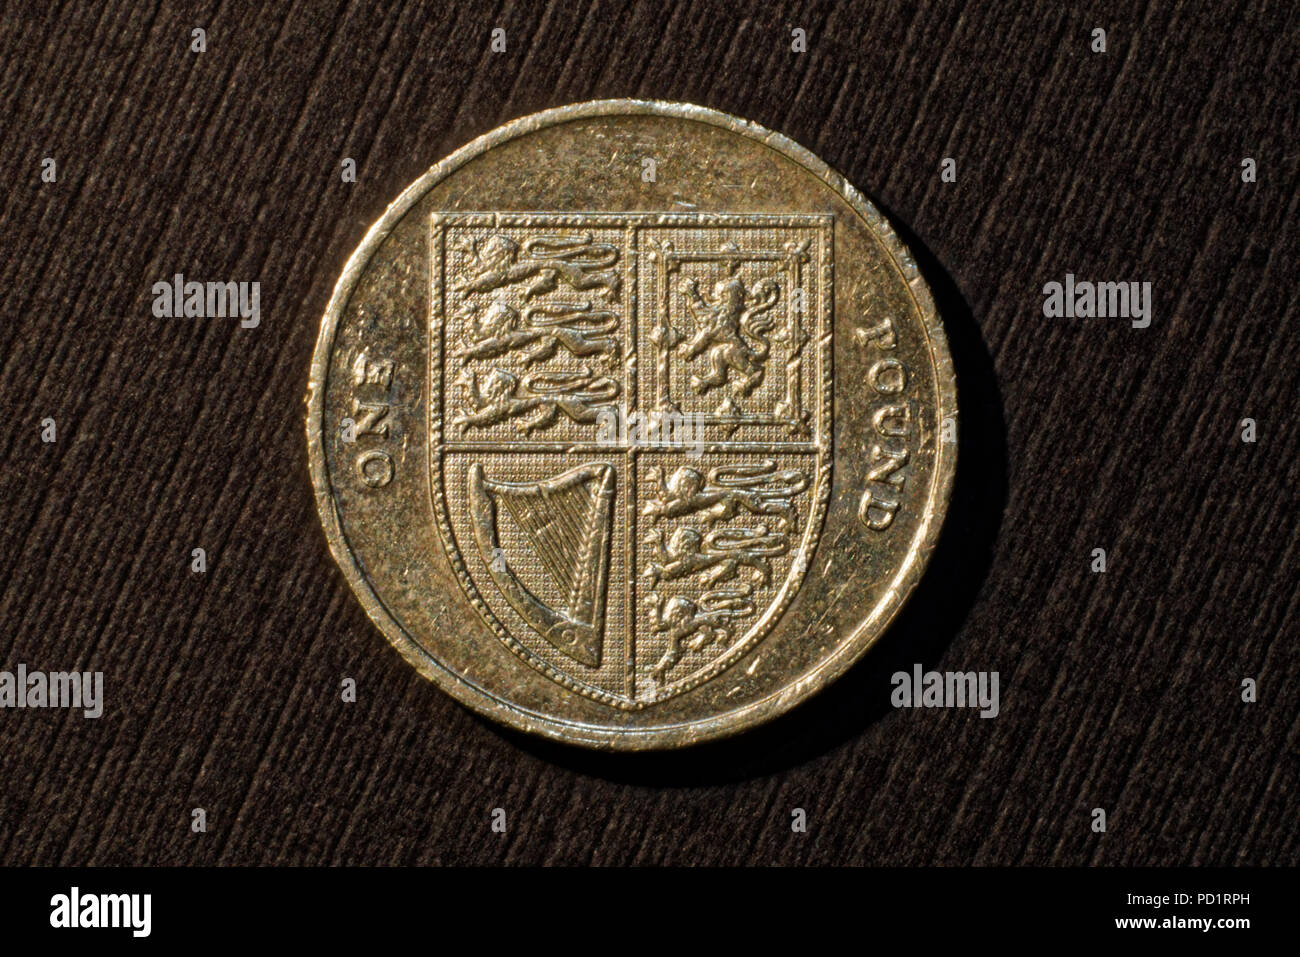 English coin,2008, one pound Stock Photo